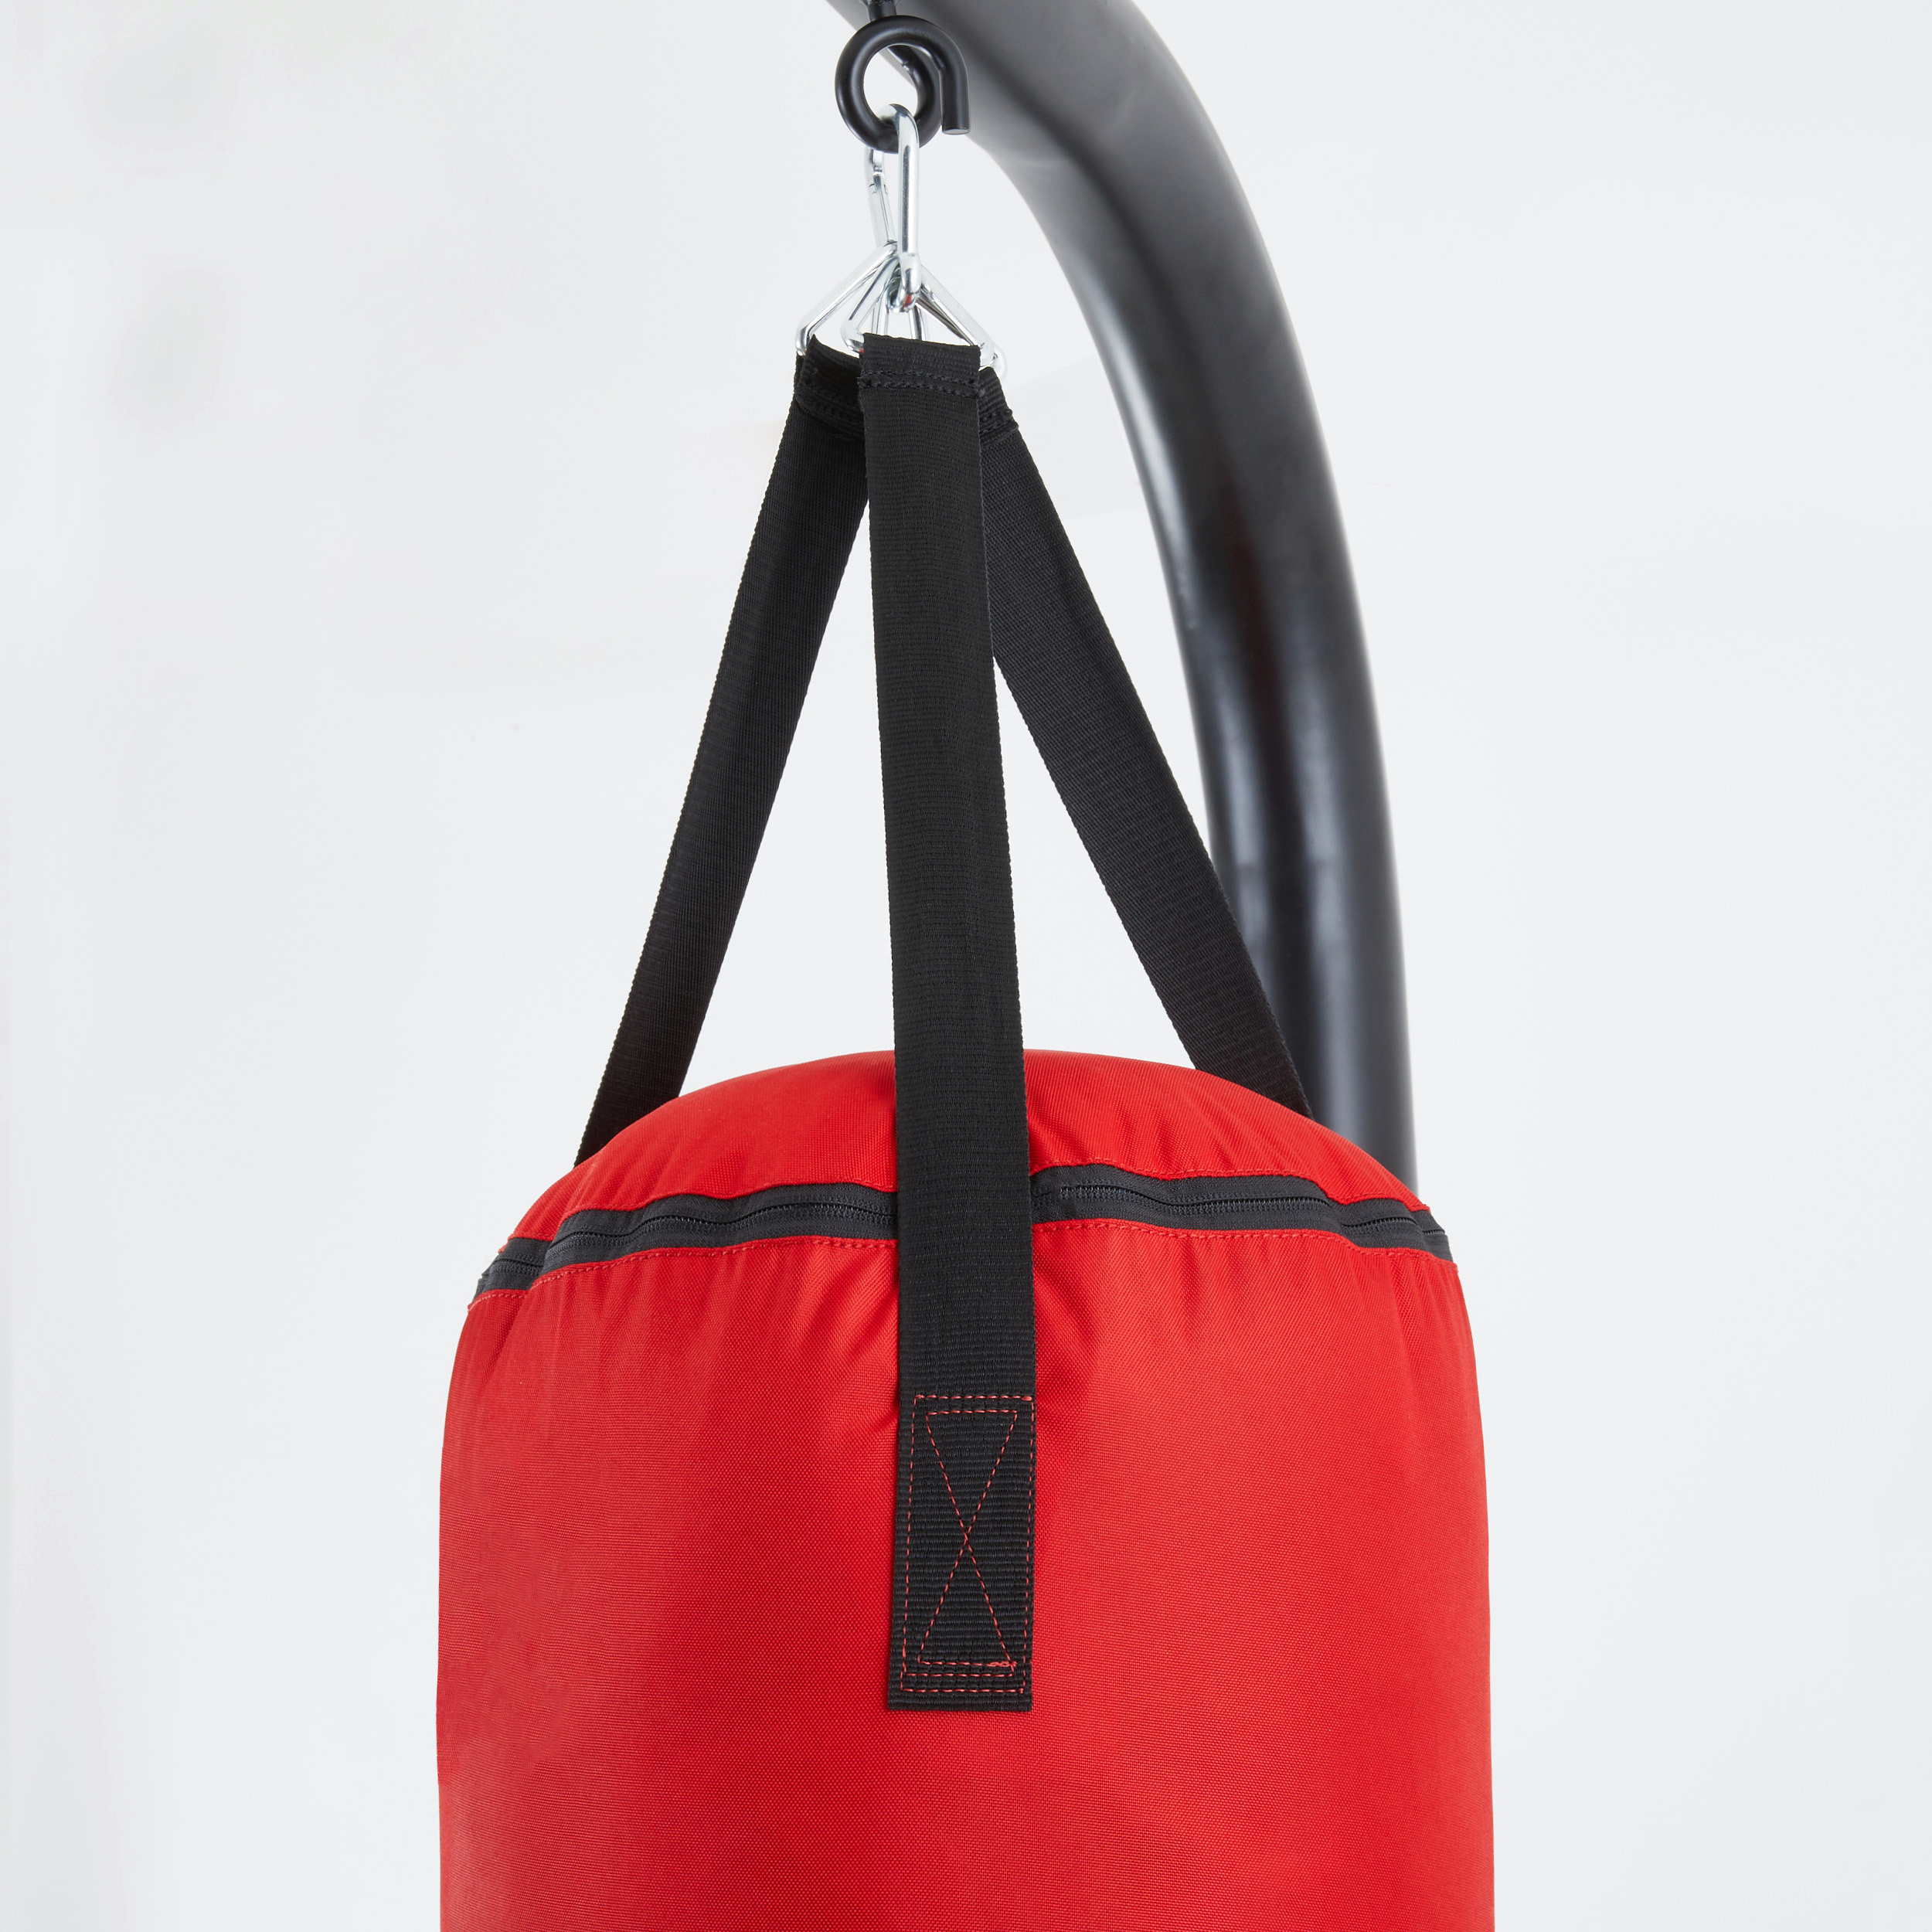 Sac de frappe Giantex sac de boxe rouge hauteur réglable 120-154cm